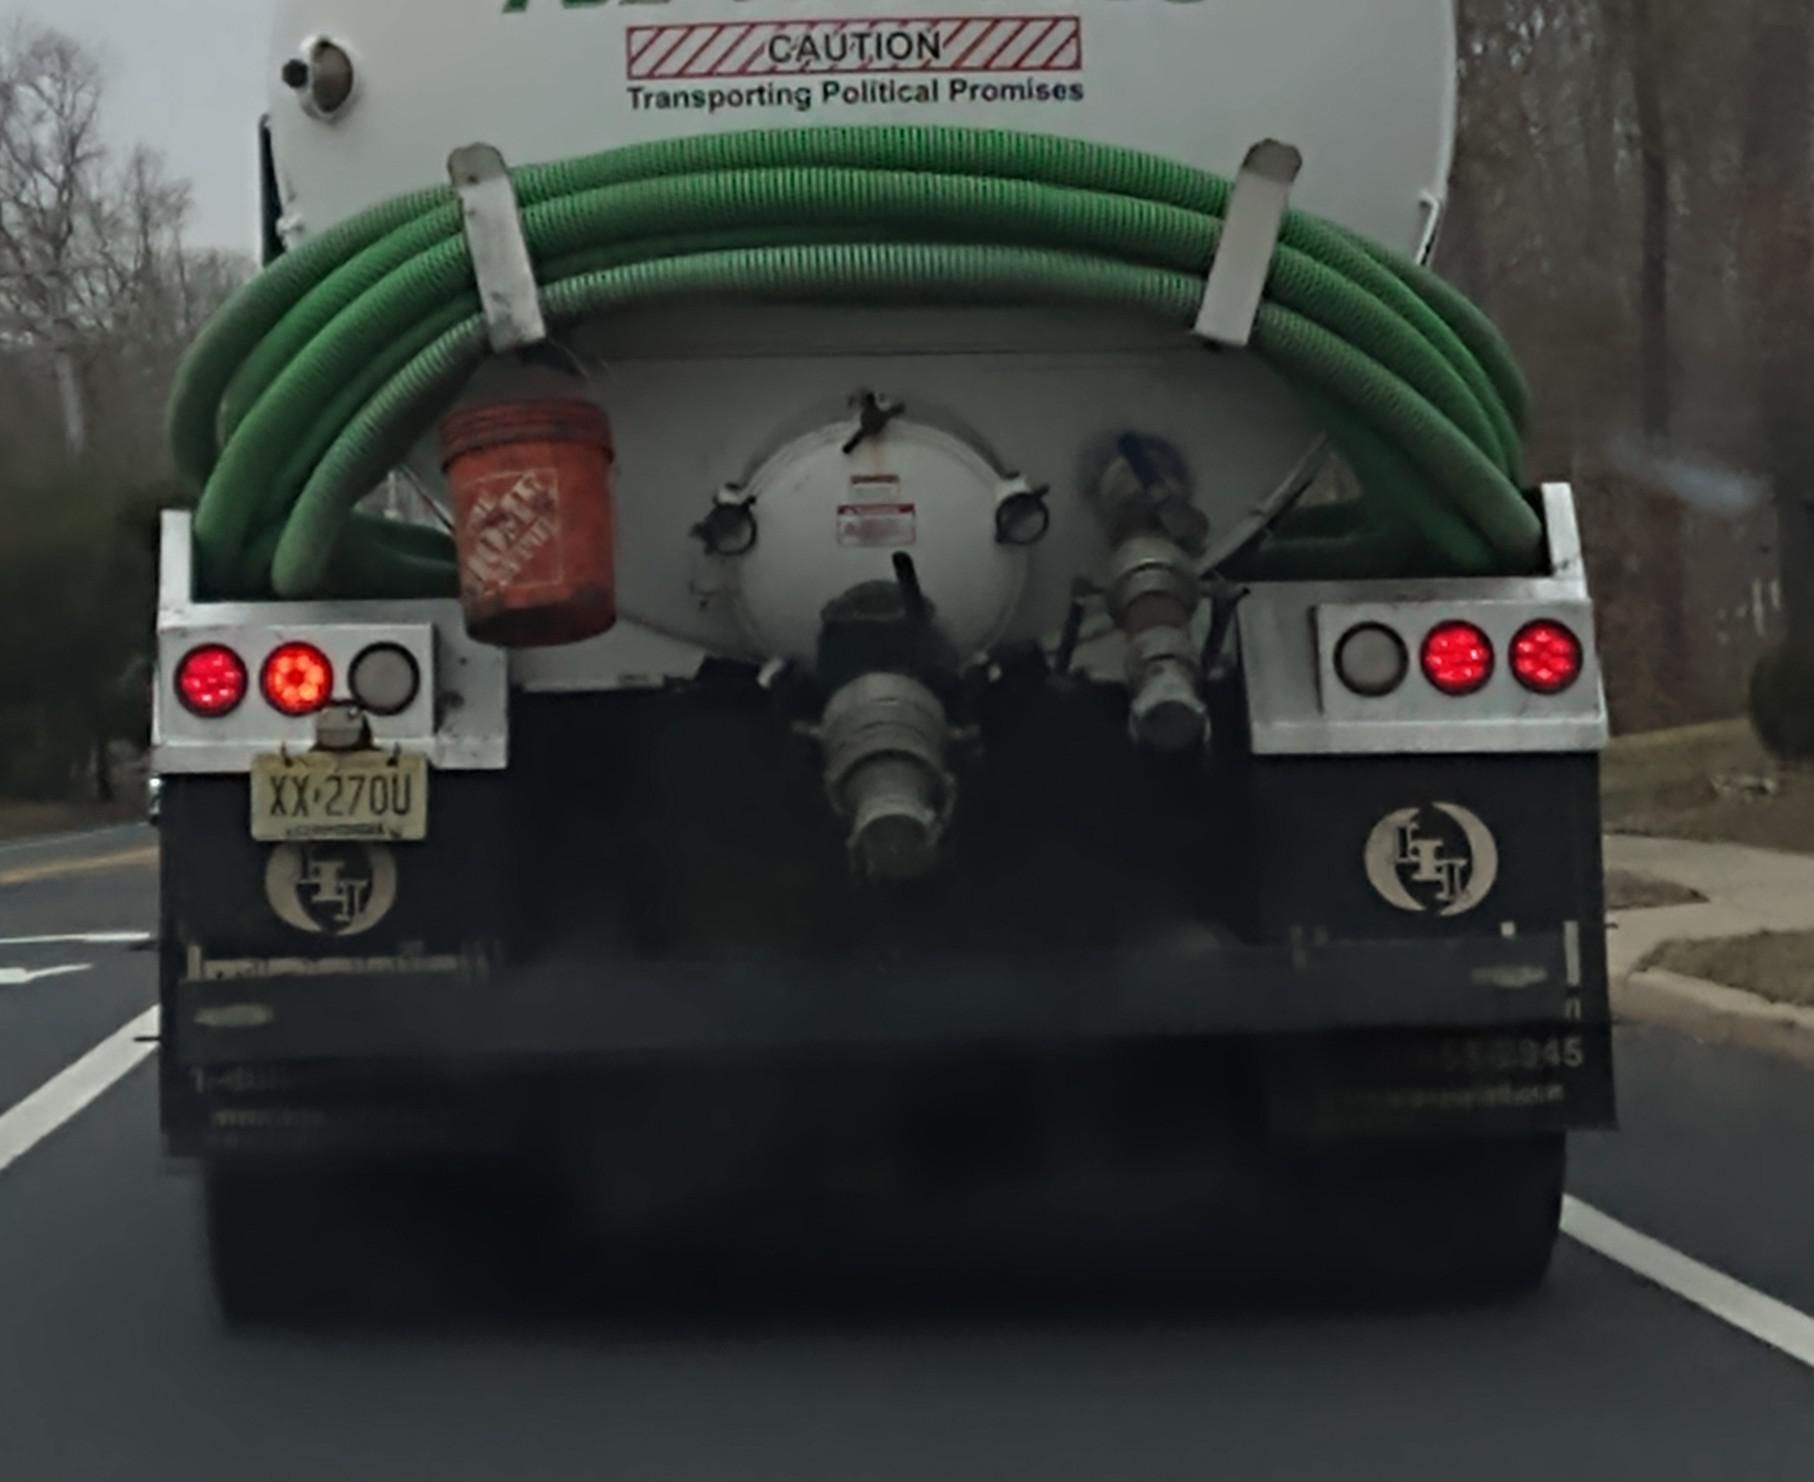 Poop truck hauling poop promises lol